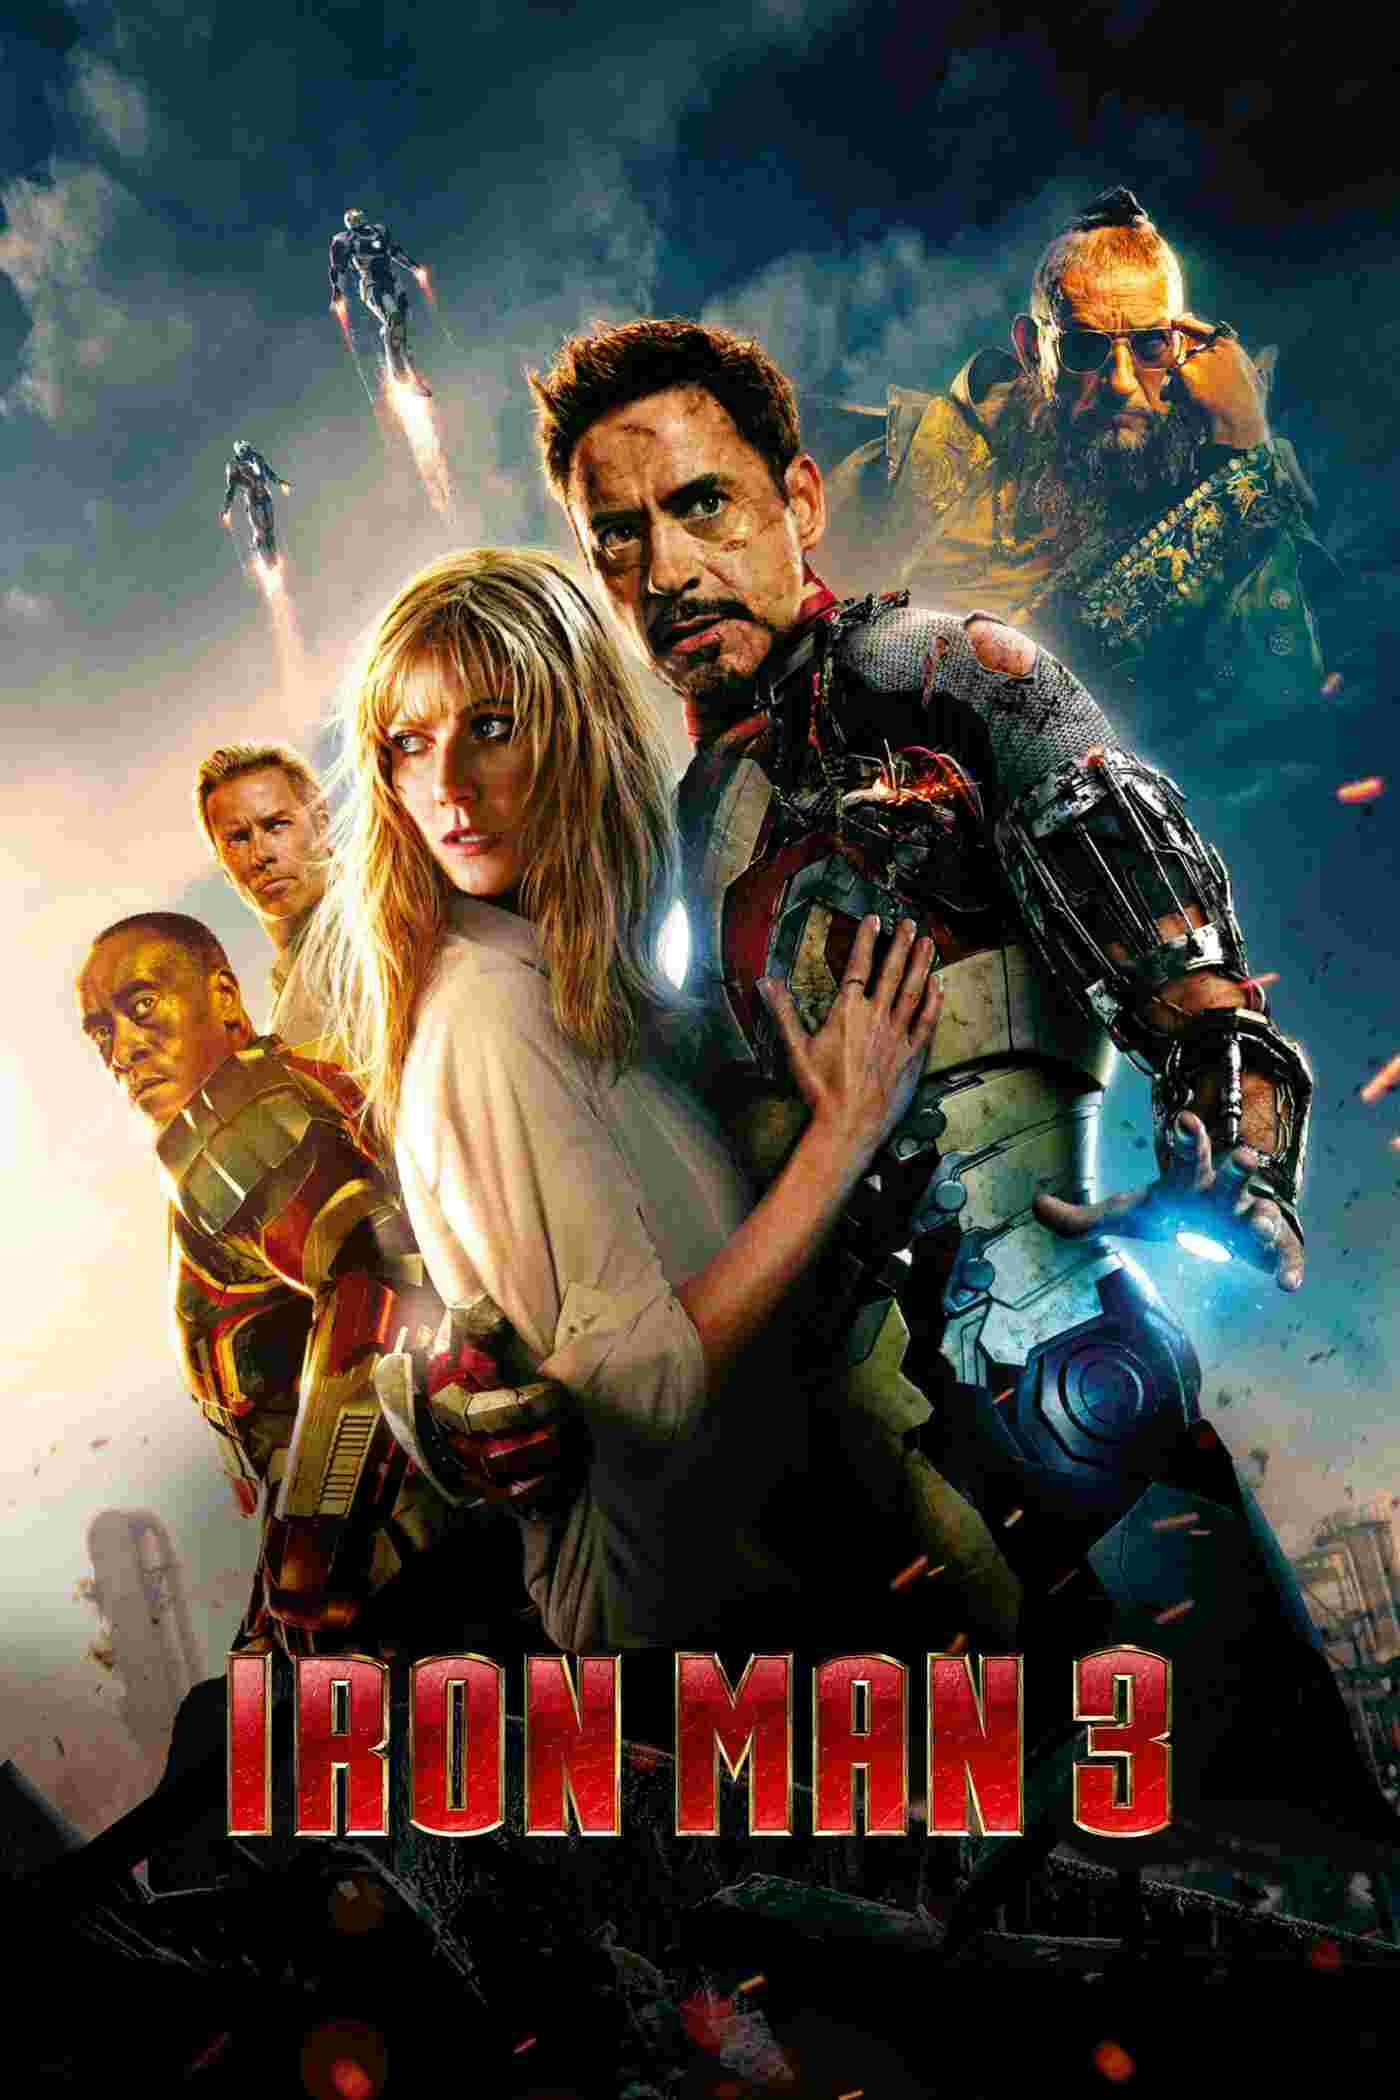 Iron Man 3 (2013) Robert Downey Jr.